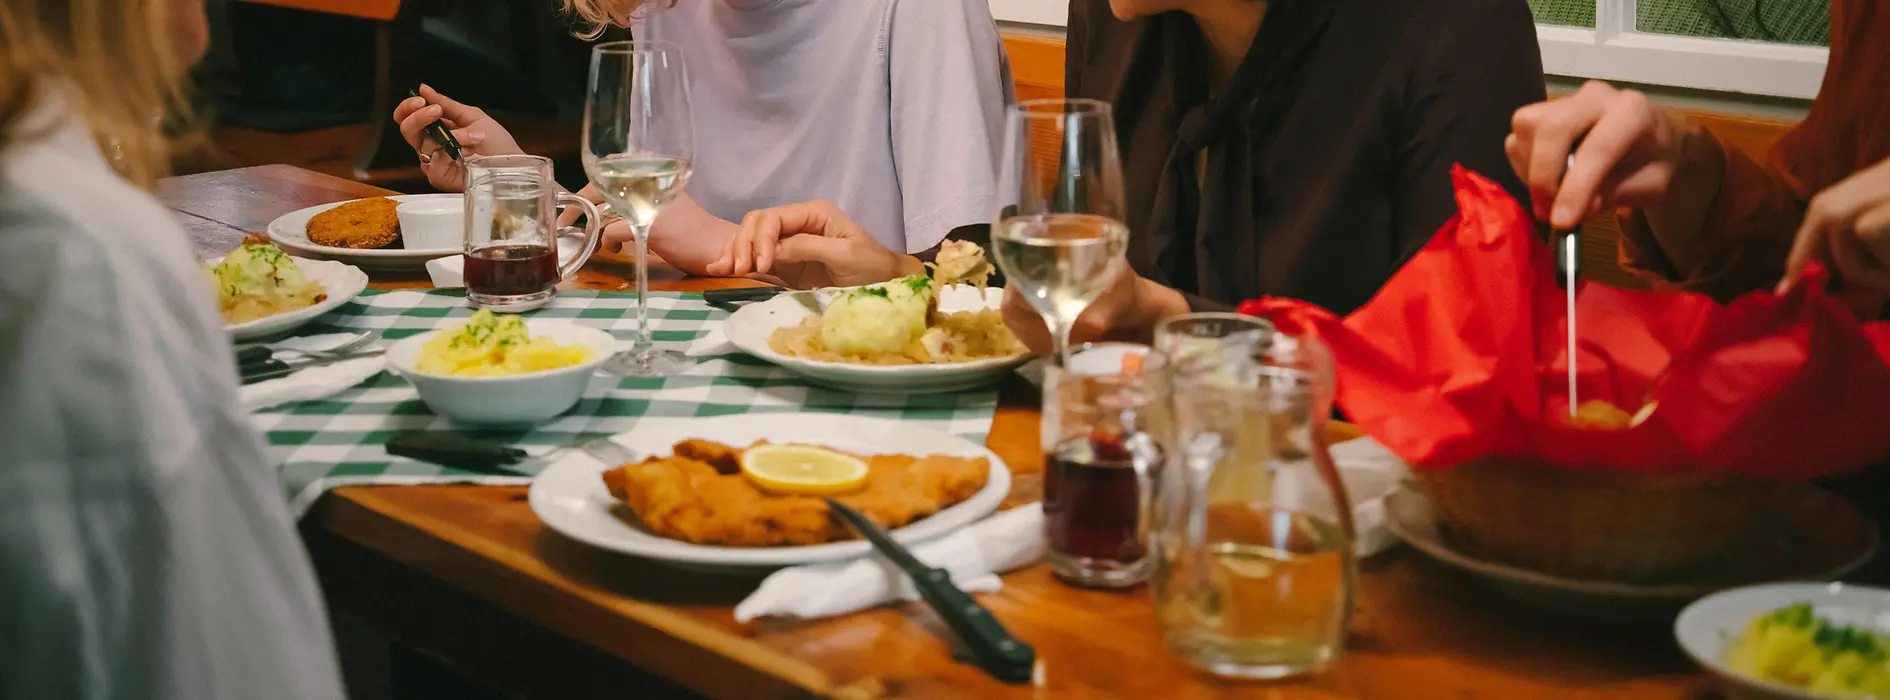 Гости едят венский шницель в винном трактире-хойригер